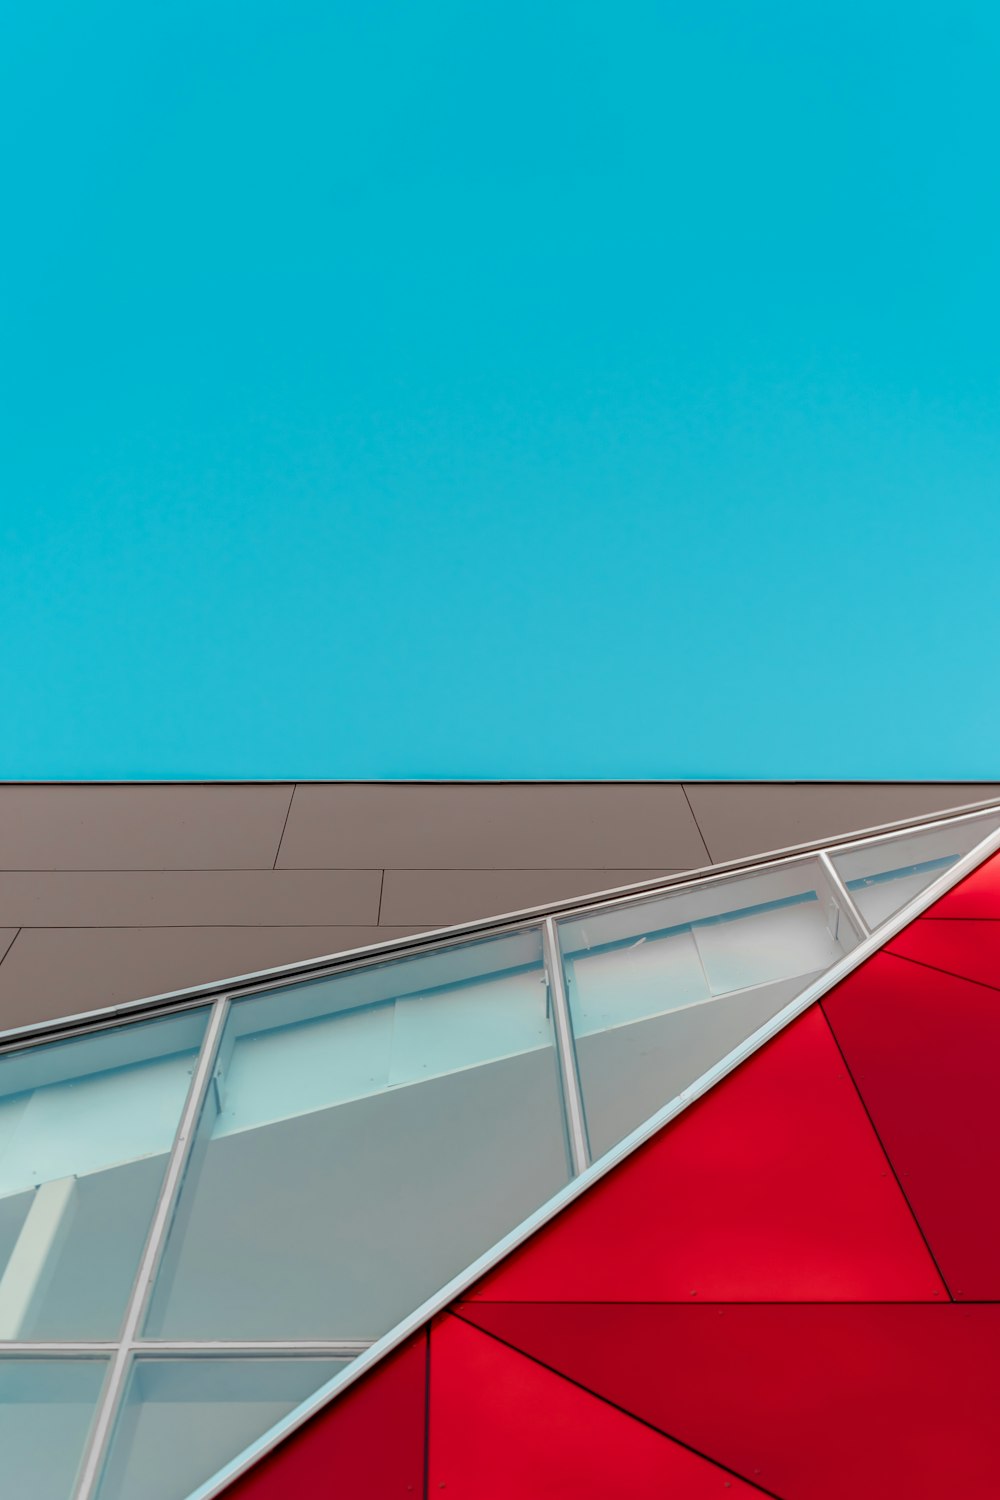 Photographie à mise au point peu profonde d’un bâtiment mural en panneaux de verre rouge, brun et blanc sous le ciel bleu